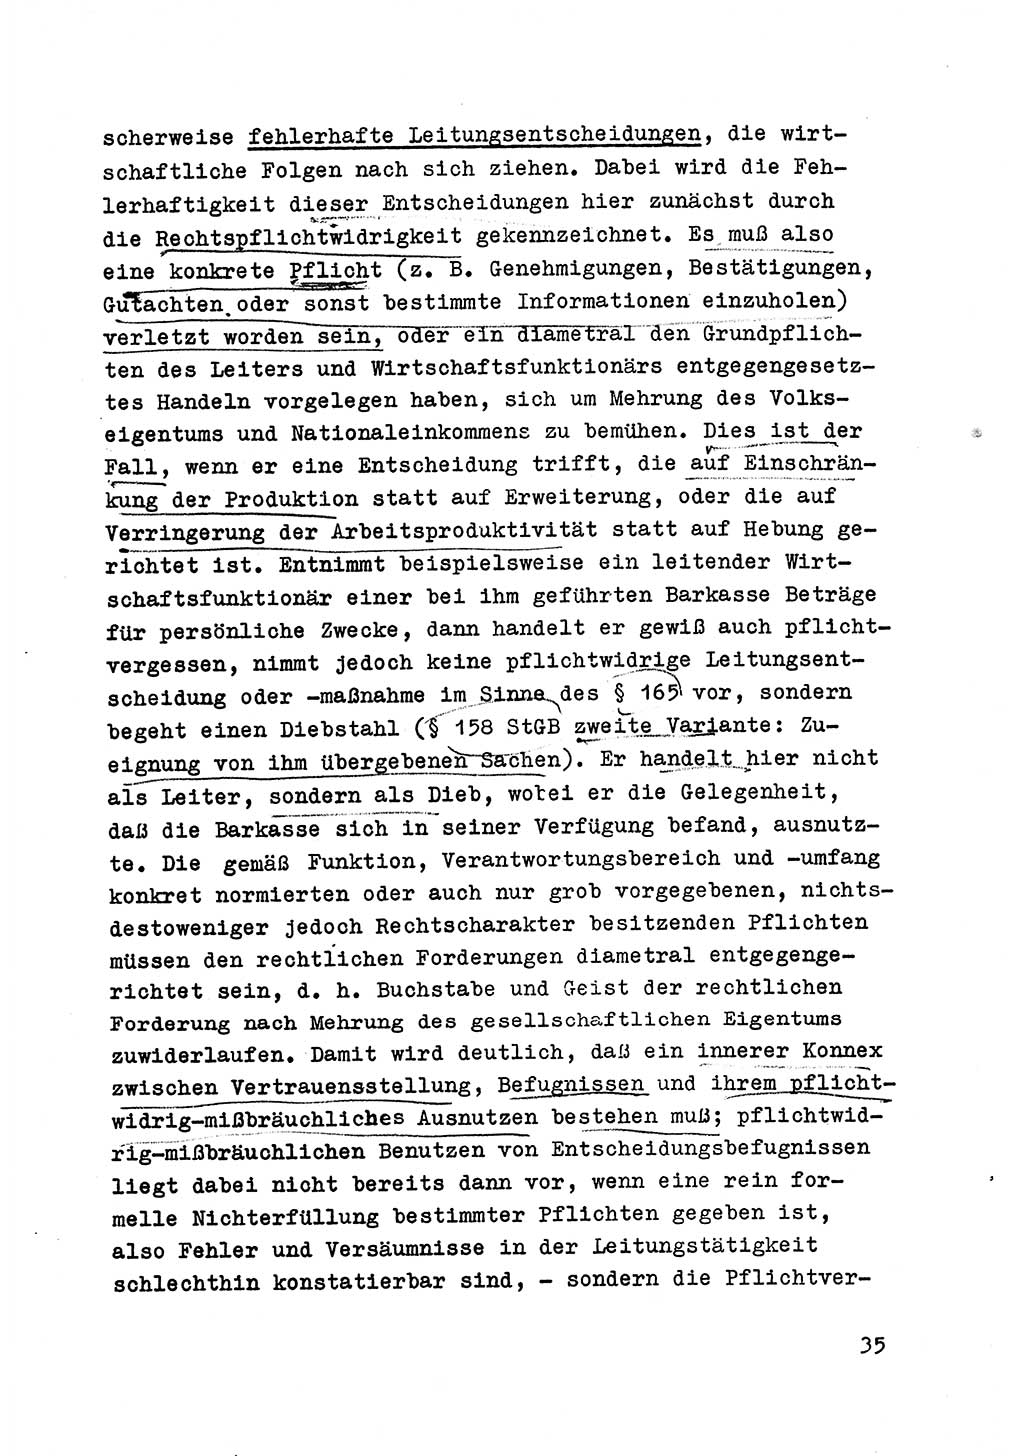 Strafrecht der DDR (Deutsche Demokratische Republik), Besonderer Teil, Lehrmaterial, Heft 6 1970, Seite 35 (Strafr. DDR BT Lehrmat. H. 6 1970, S. 35)